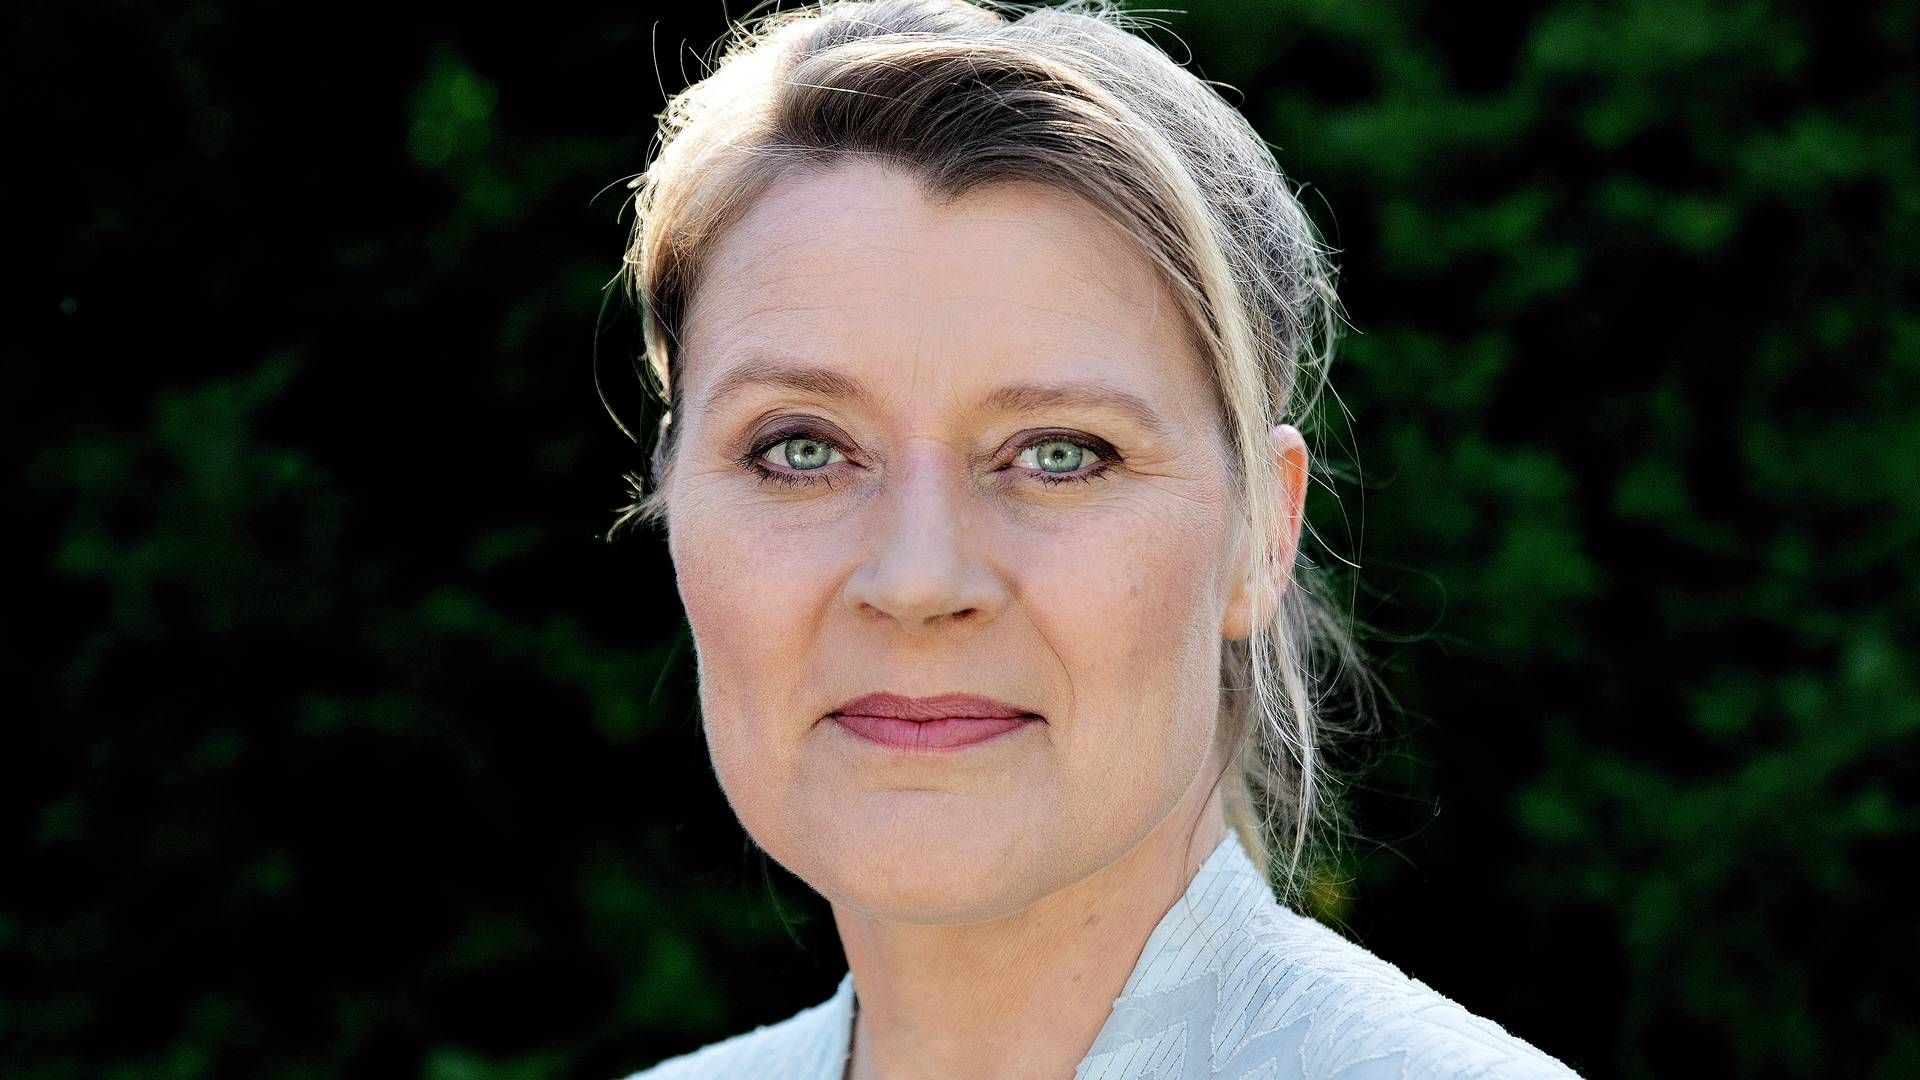 Inden hun blev direktør for foreningen, har Camilla Laudrup blandt andet været redaktør hos DR og afdelingschef i Mellemfolkeligt Samvirke. | Foto: Martin Lehmann/Ritzau Scanpix